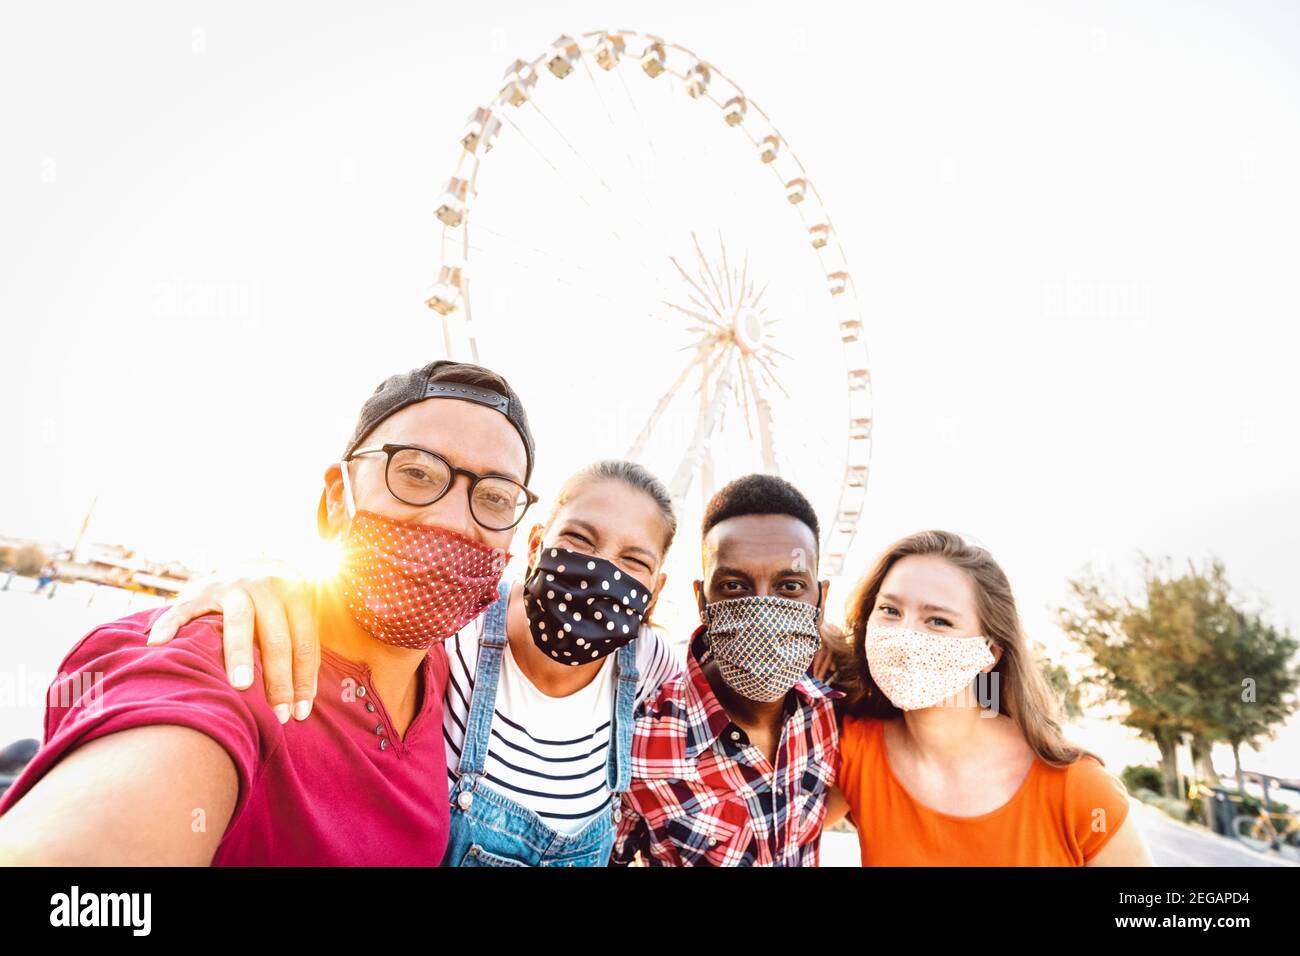 Studenti mileniali multirazziali che prendono selfie protetti da maschere facciali - Nuovo concetto di viaggio normale con i giovani che si divertono in tutta sicurezza insieme Foto Stock